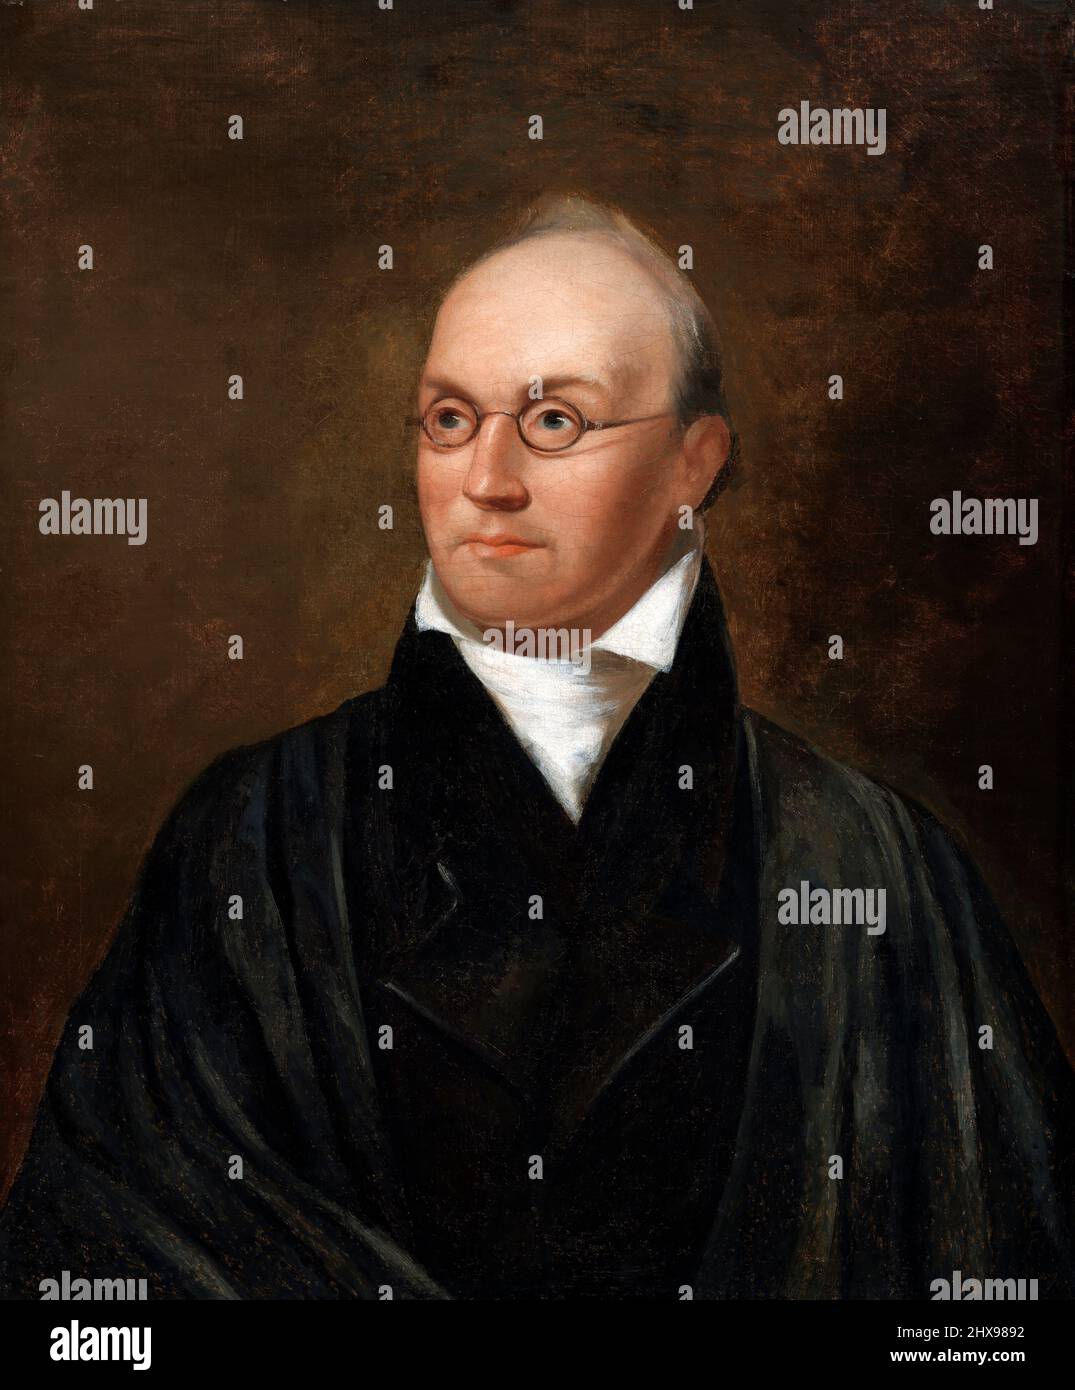 Ritratto della Corte Suprema degli Stati Uniti Giustizia, Joseph Story (1779-1845) di Chester Harding, olio su tela, 1827 Foto Stock